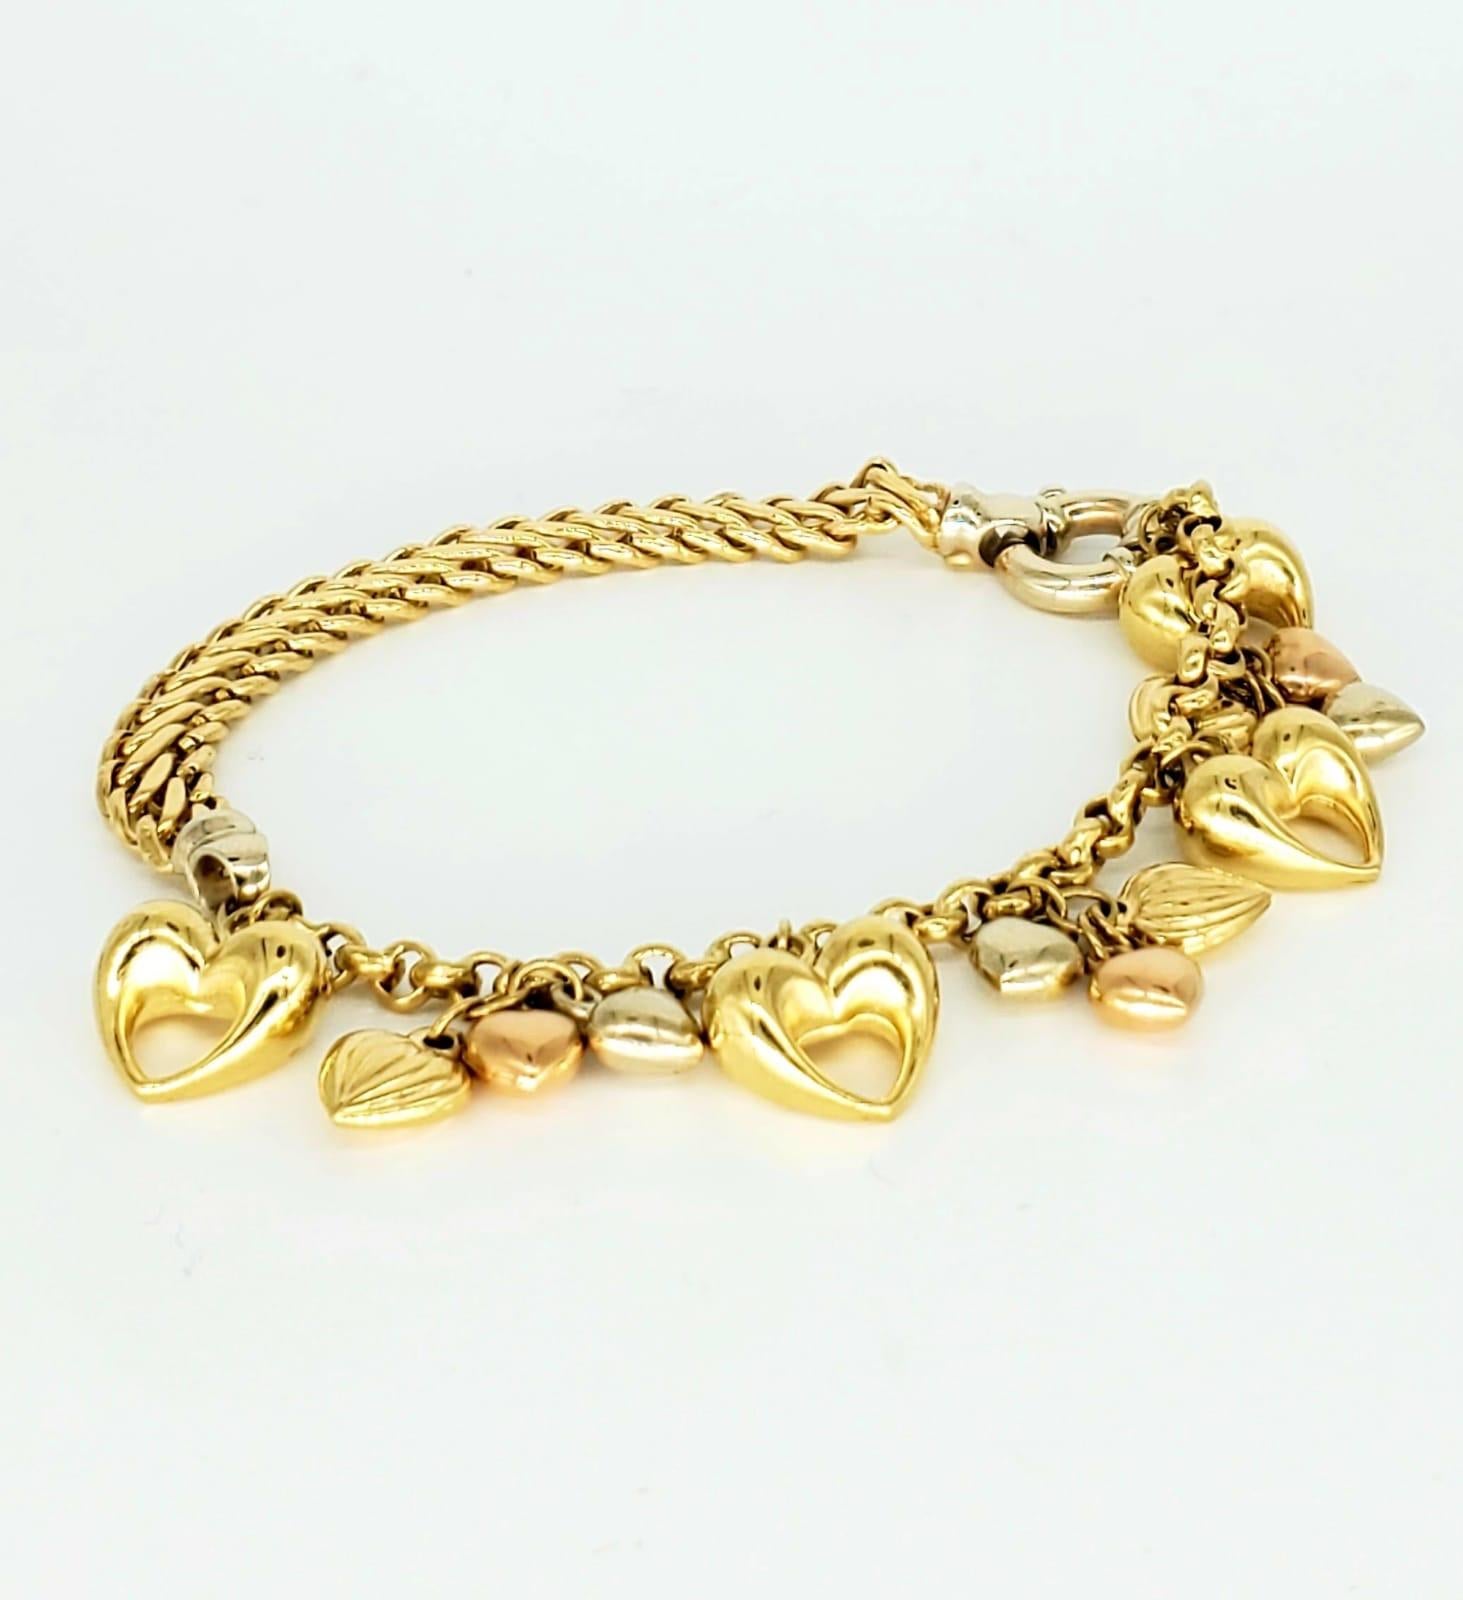 Vintage Kingdom of Hearts 18k Gold-Armband. Das Armband ist schön und fällt in der Öffentlichkeit auf. Das Armband hat eine Länge von 7,5 Zoll und eine Breite von 6,5 mm. Das Armband besteht aus 18-karätigem Gold und weist Herzen aus Gelb-, Weiß-